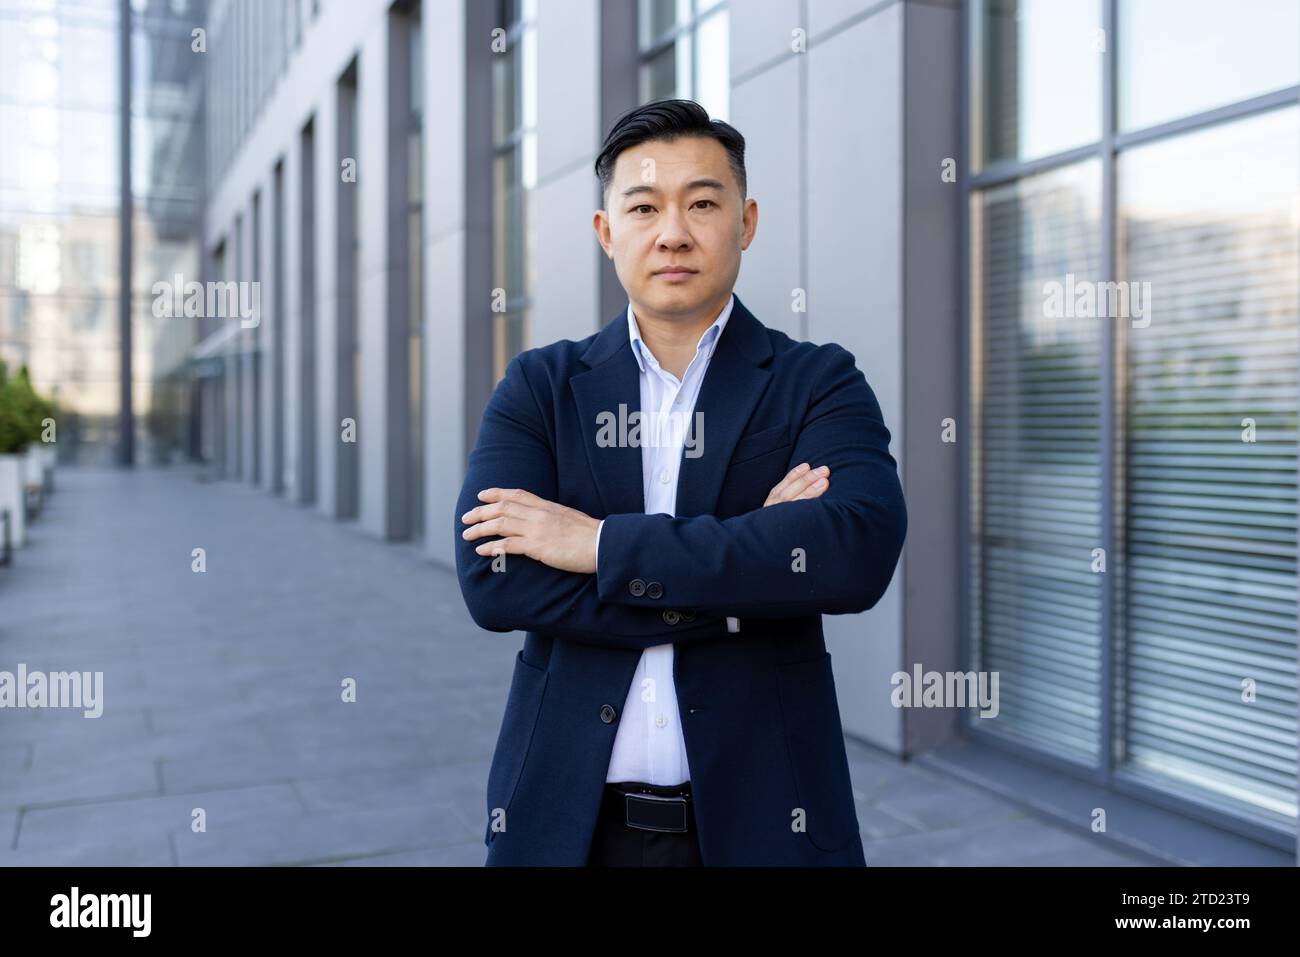 Portrait d'un jeune avocat asiatique, homme d'affaires debout à l'extérieur d'un immeuble de bureaux dans un costume, les bras croisés sur sa poitrine, regardant sérieusement et con Banque D'Images